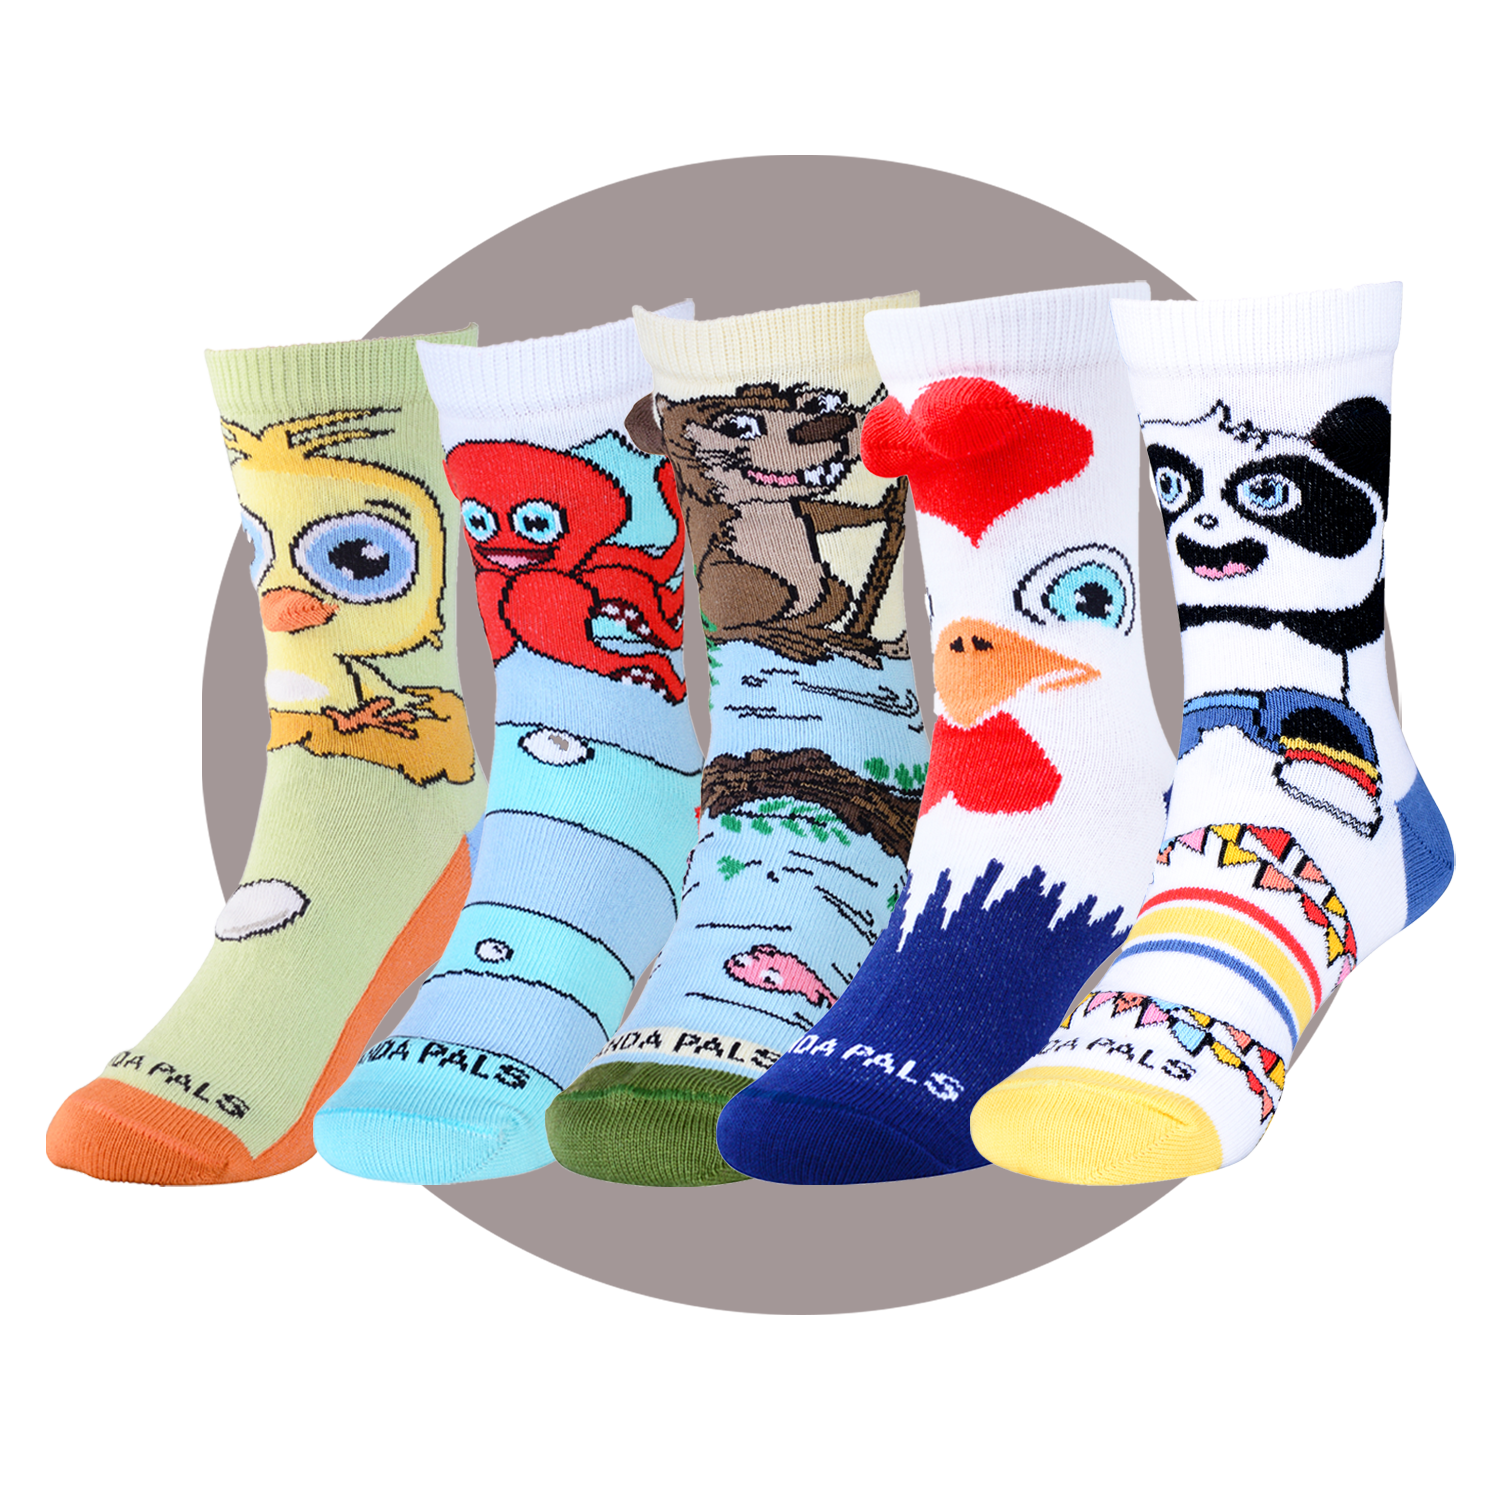  MINI PANDA Little Girl Socks,Socks for Girls 4-6 Years